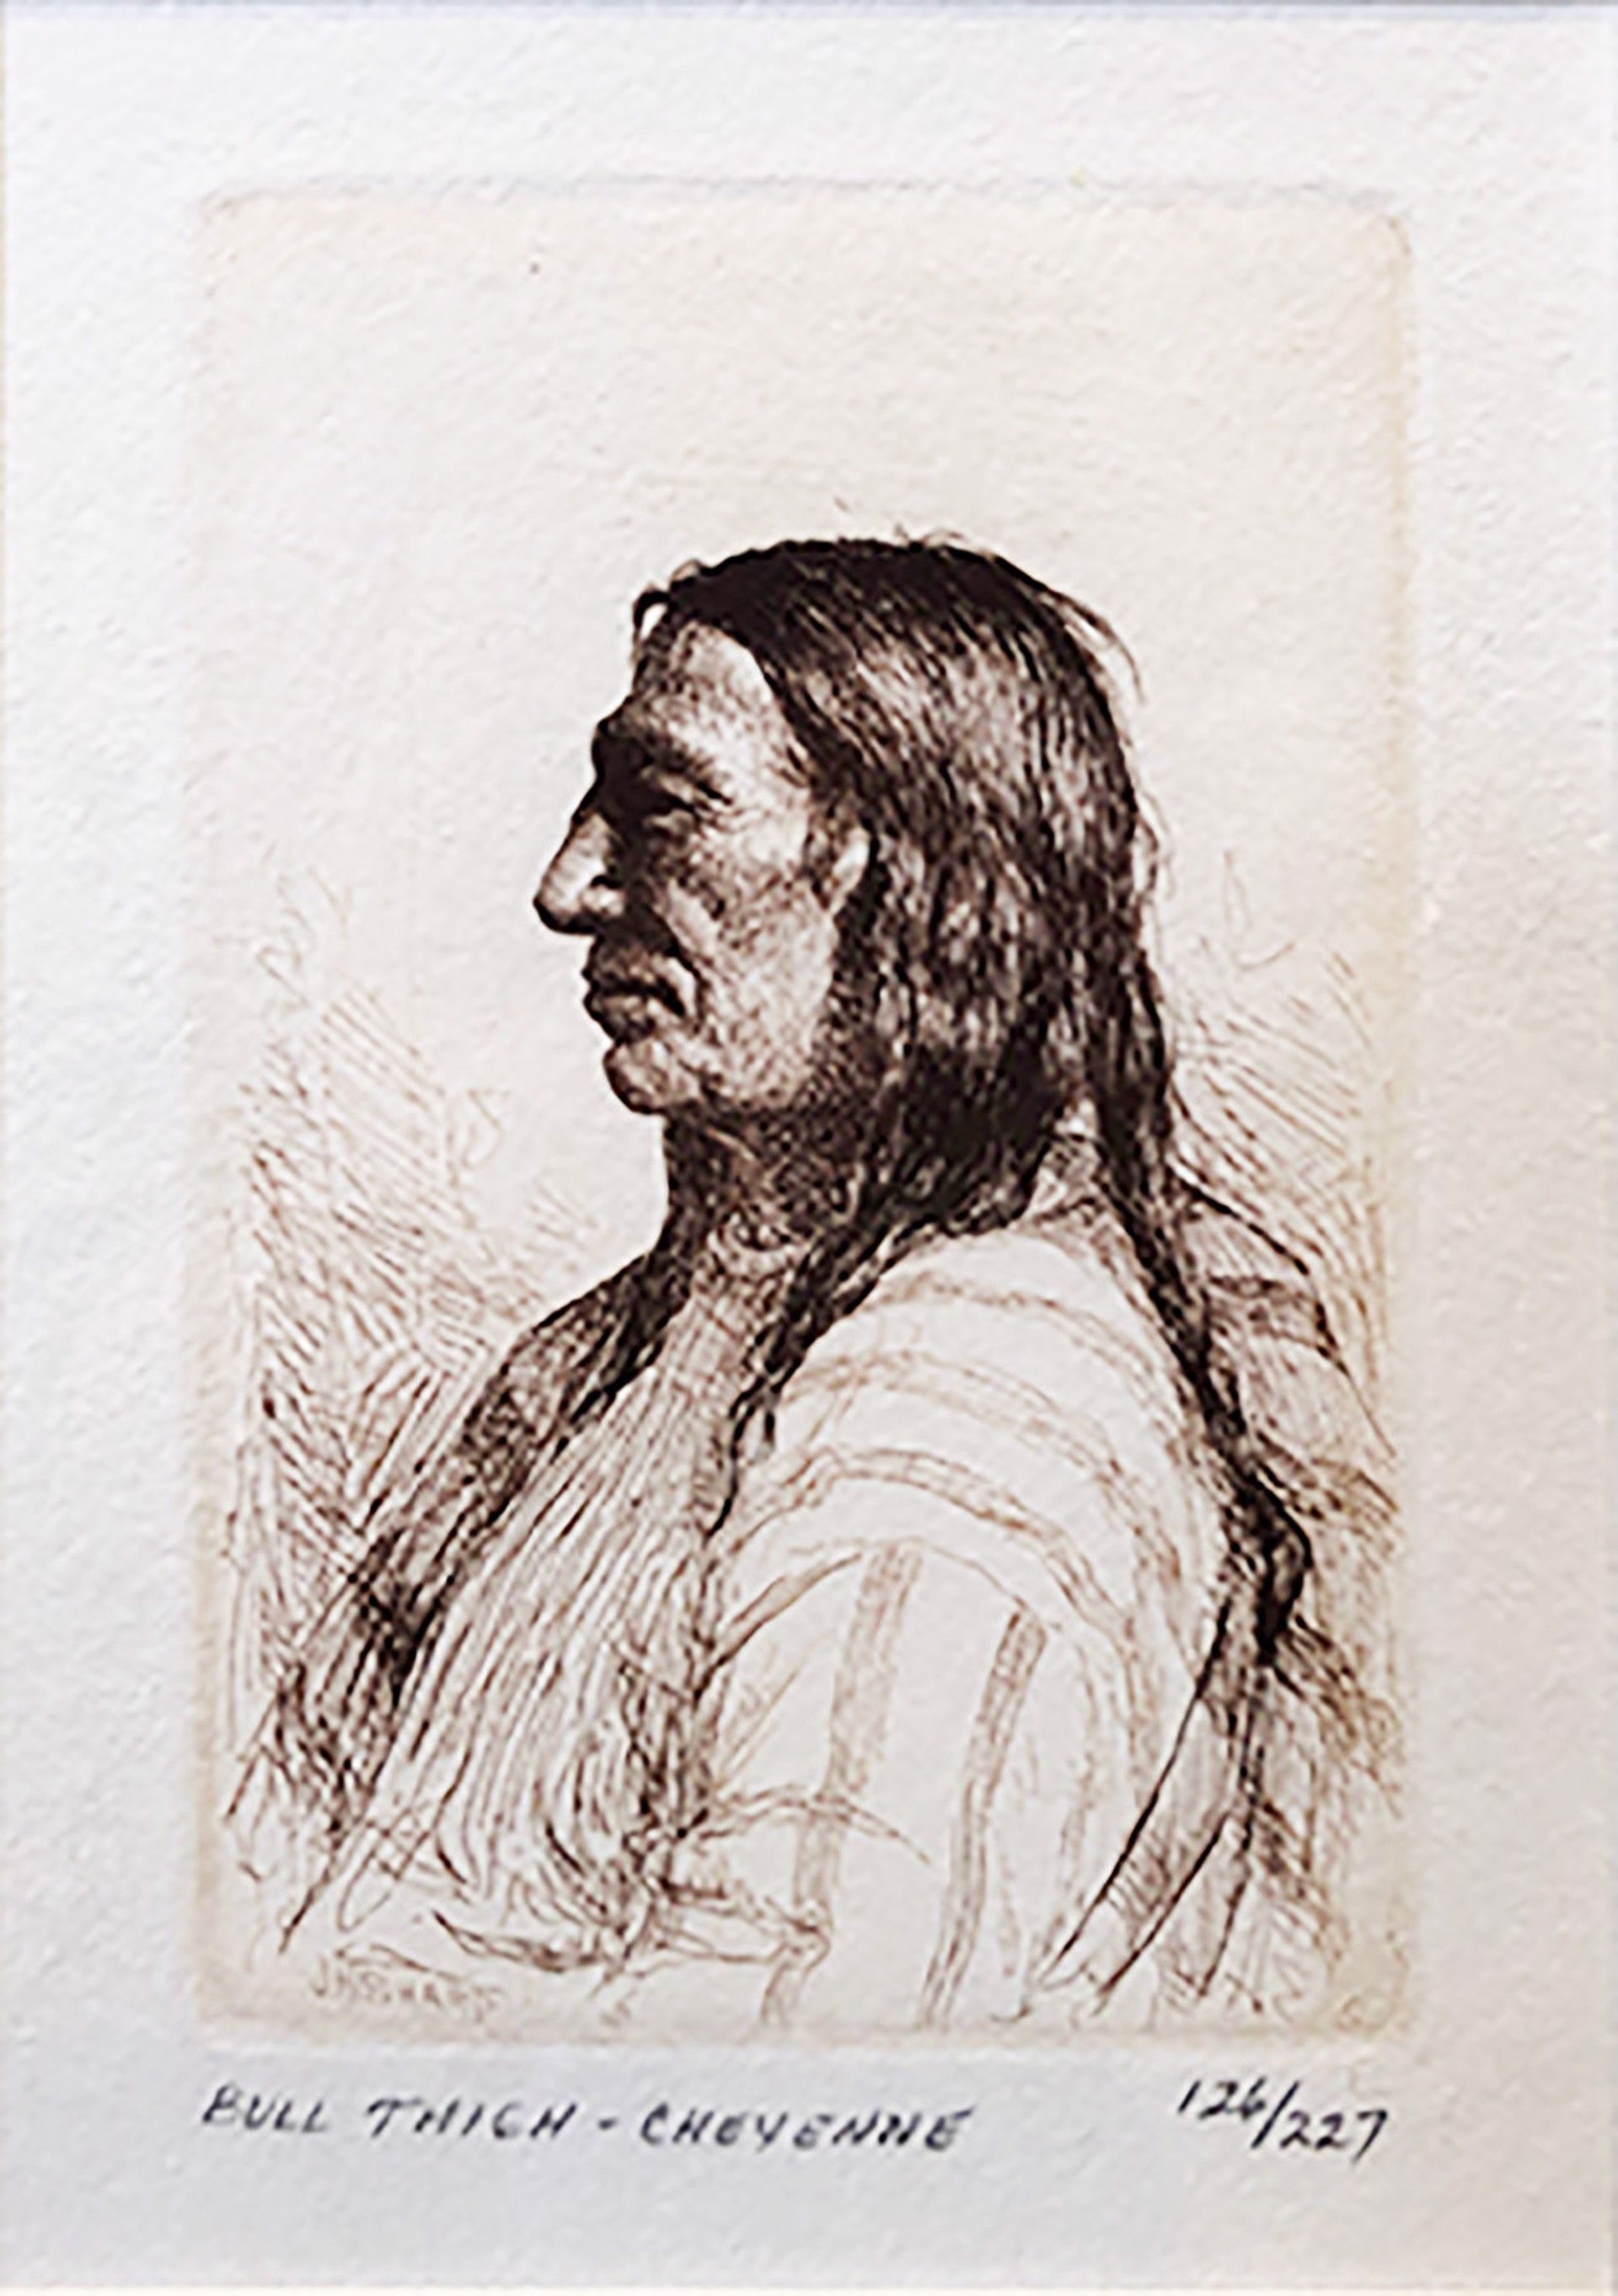 Bull Thigh-Cheyenne by Joseph Sharp